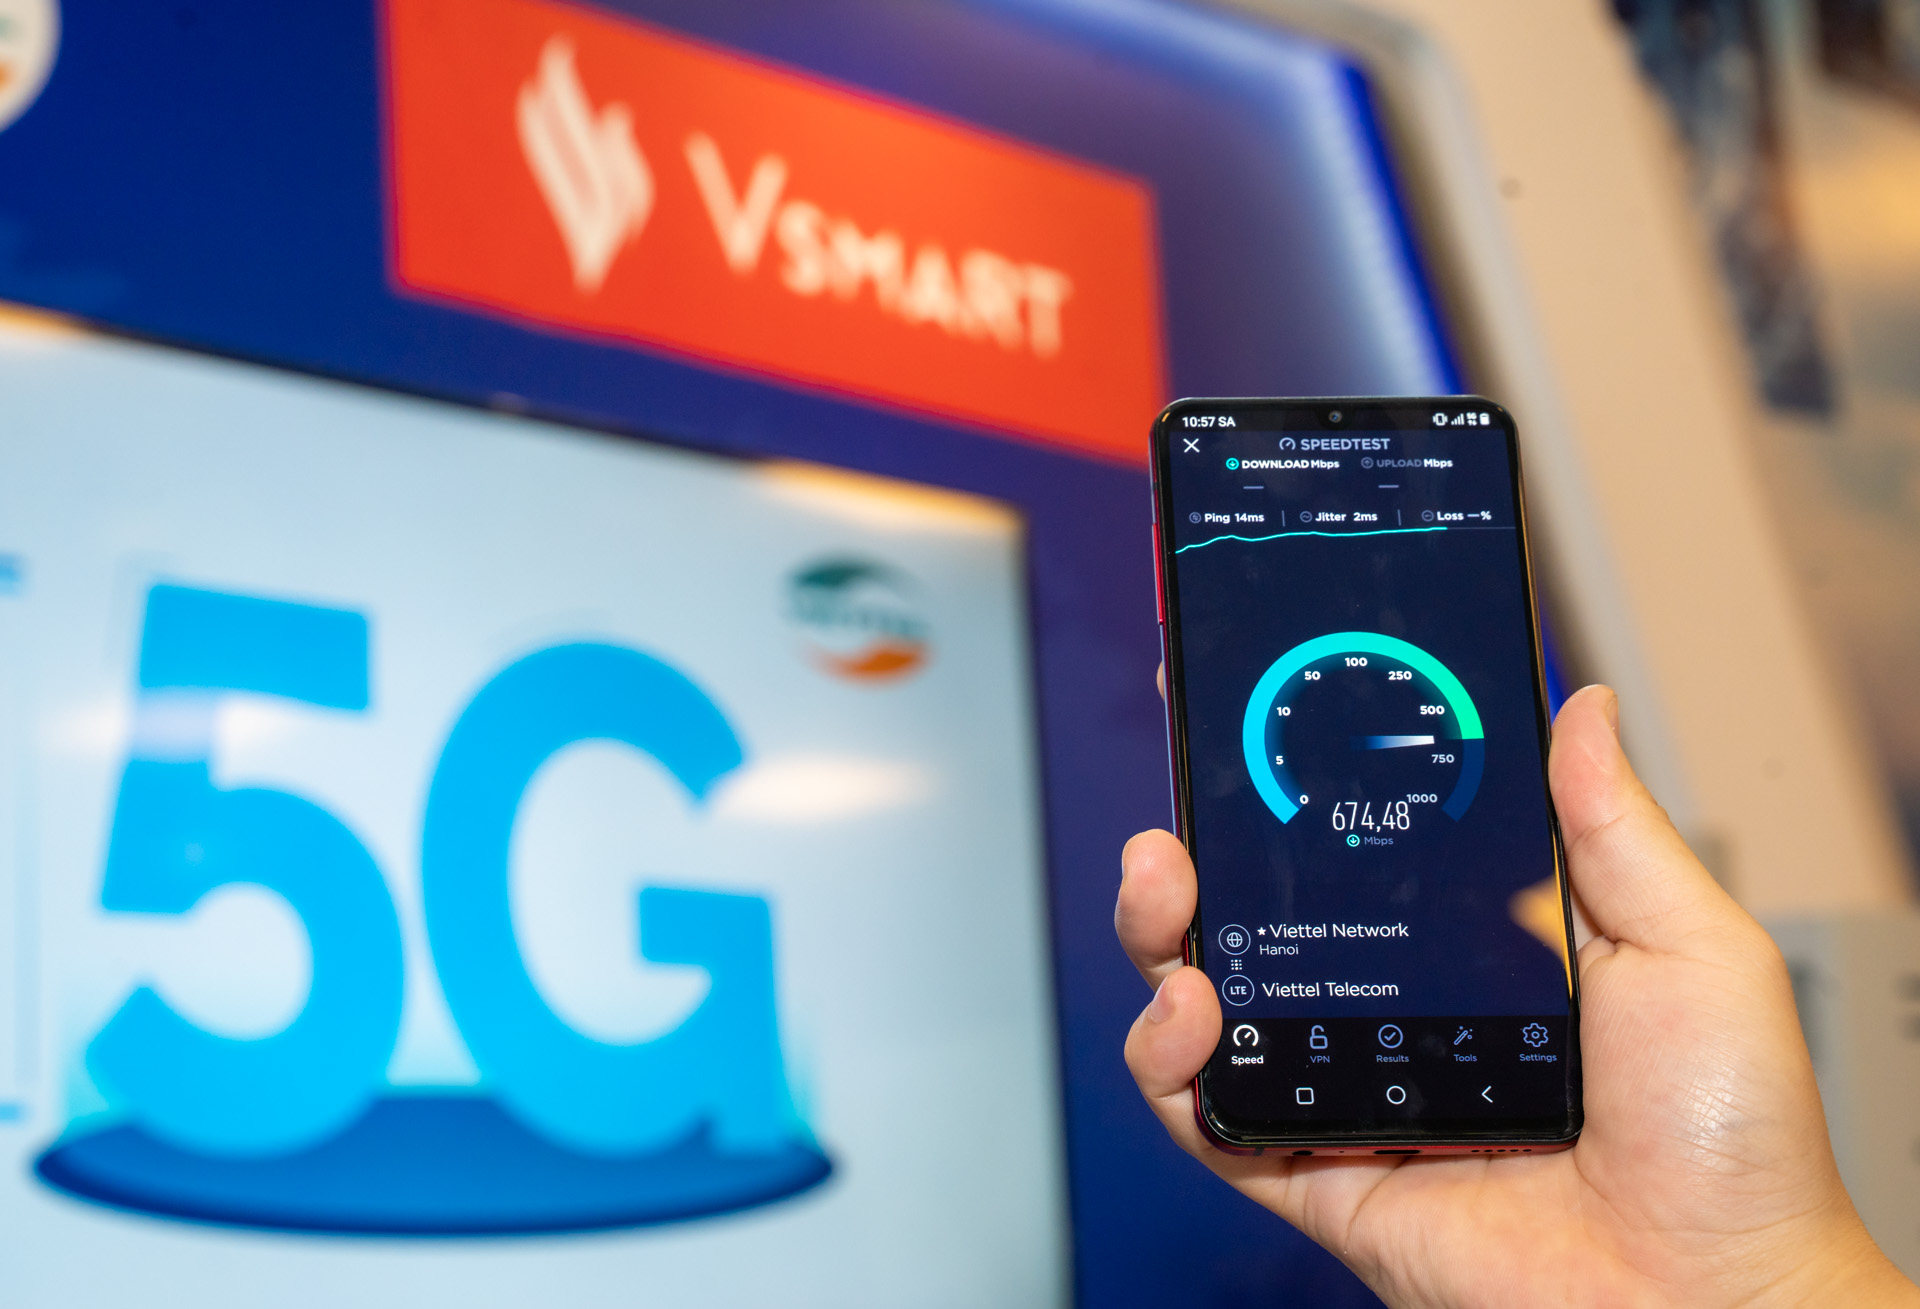 Thử nghiệm của Cục Viễn thông trên Vsmart Aris 5G cho kết quả tốc độ 5G trên mẫu điện thoại này cao gấp 8 lần so với tốc độ 4G